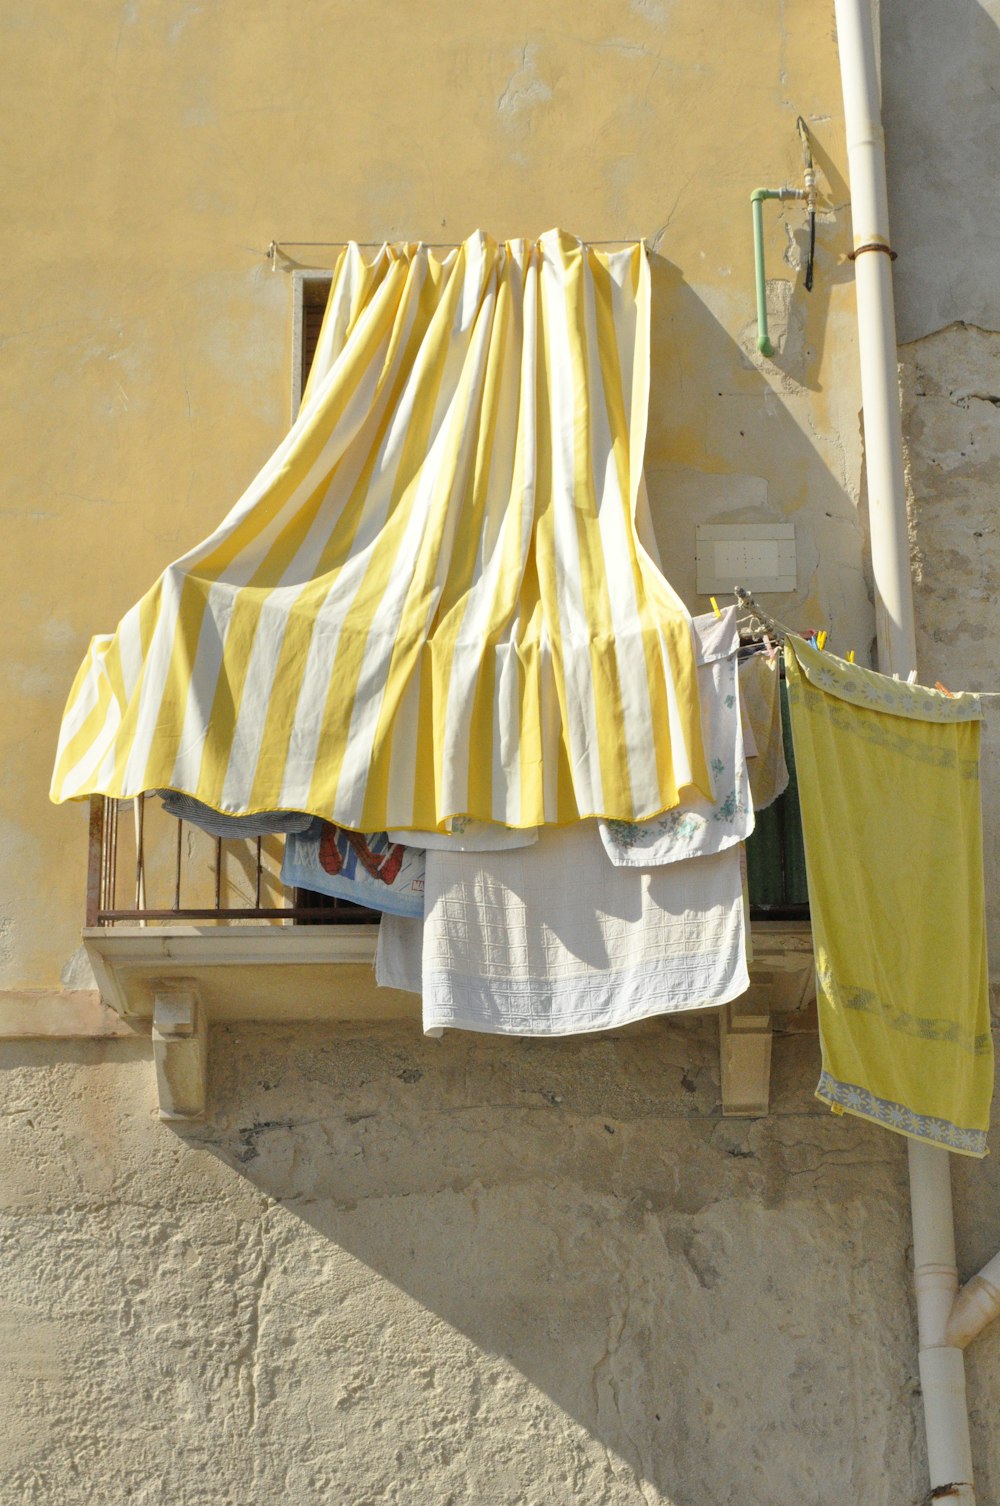 têxtil amarelo e branco na cerca de madeira marrom